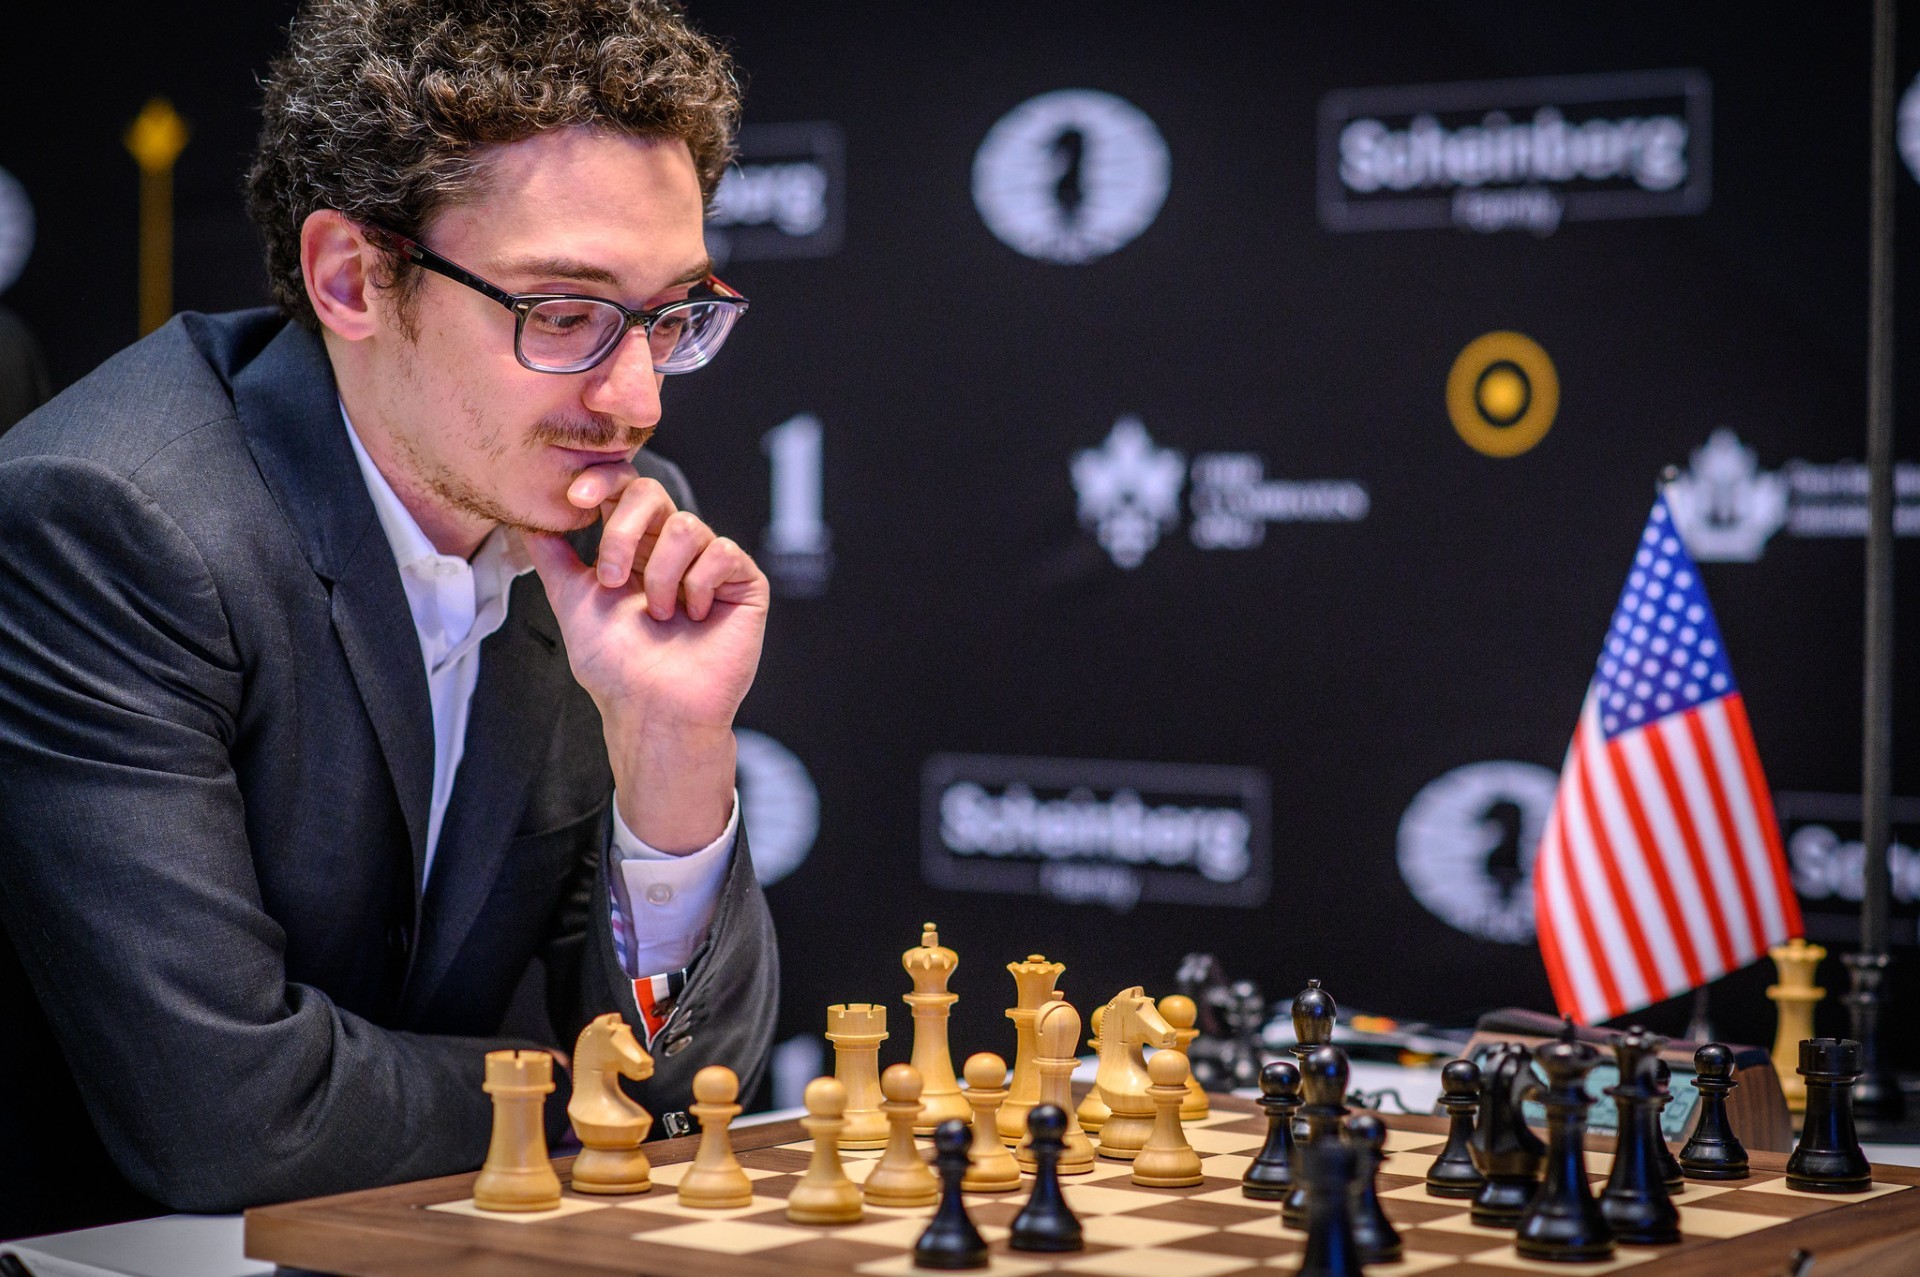 Gukesh Dommaraju, la insólita precocidad del nuevo genio del ajedrez: "Impresiona cómo conserva la compostura en los momentos más estresantes"